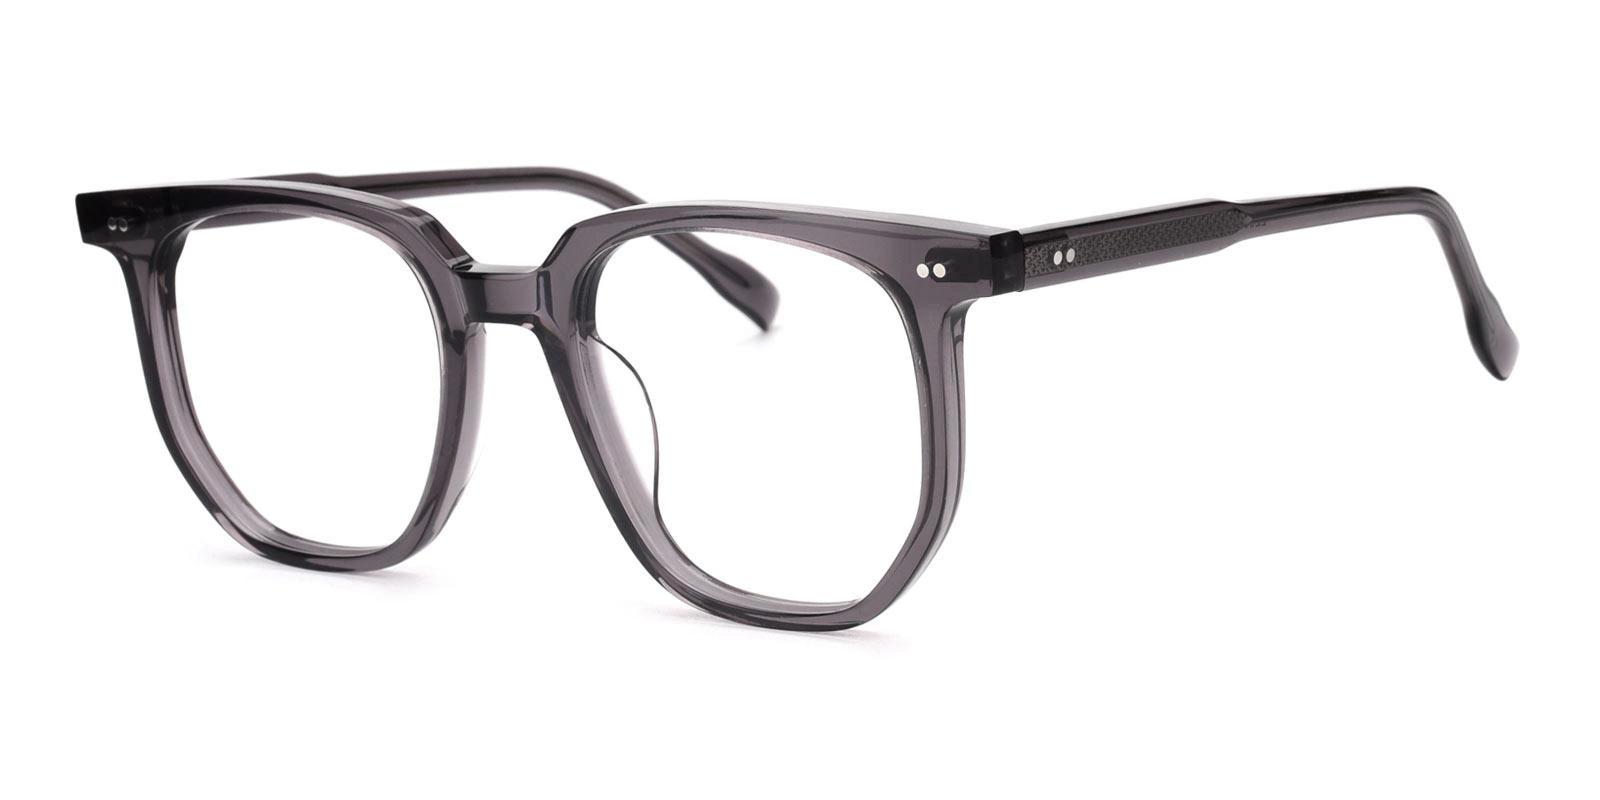 Lysette Gray Acetate Eyeglasses , UniversalBridgeFit Frames from ABBE Glasses